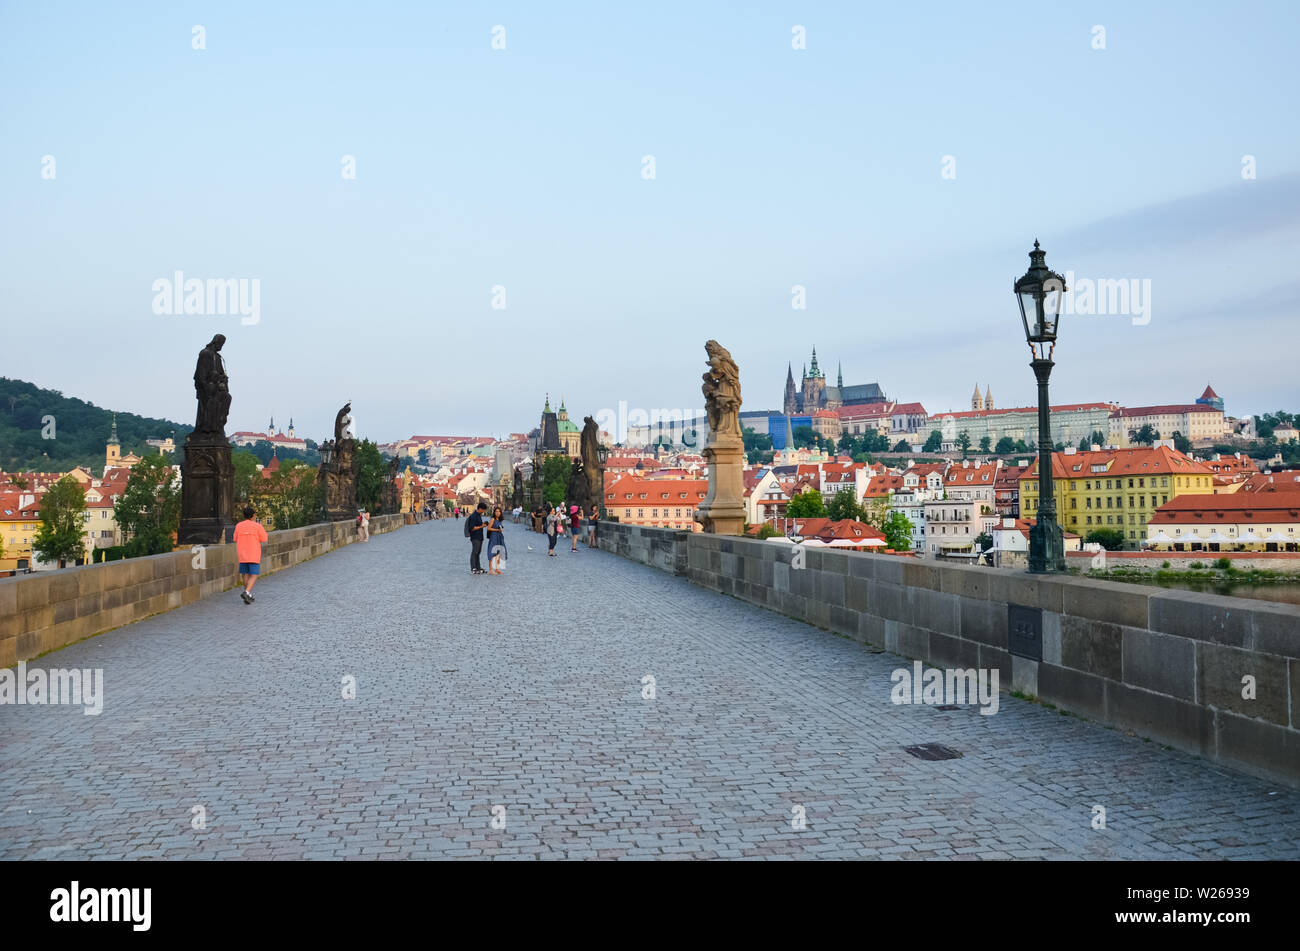 Prag, Tschechische Republik - 27. Juni 2019: Menschen zu Fuß auf der berühmten Karlsbrücke in der historischen Altstadt von der tschechischen Hauptstadt. In den frühen Morgenstunden bei Sonnenaufgang das Licht fotografiert. Gotische Wahrzeichen, Statuen. Stockfoto